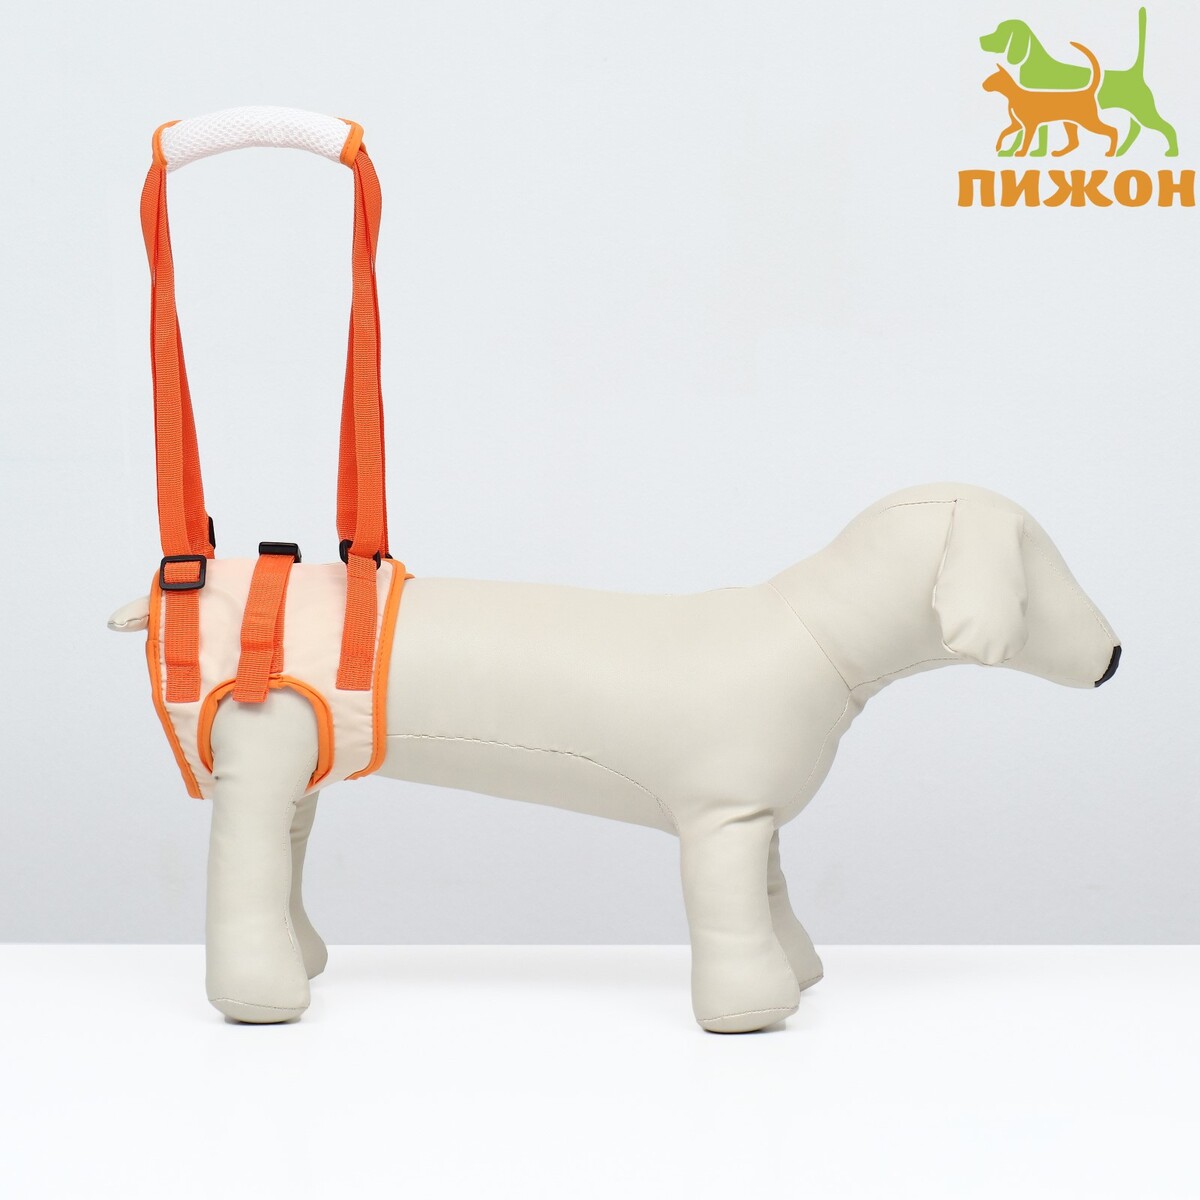 Ремень вспомогательный для задних лап, размер l (от 56-62 см, вес 40-60 кг), оранжевый оранжевый тканевый ремень для мальчика 90 см